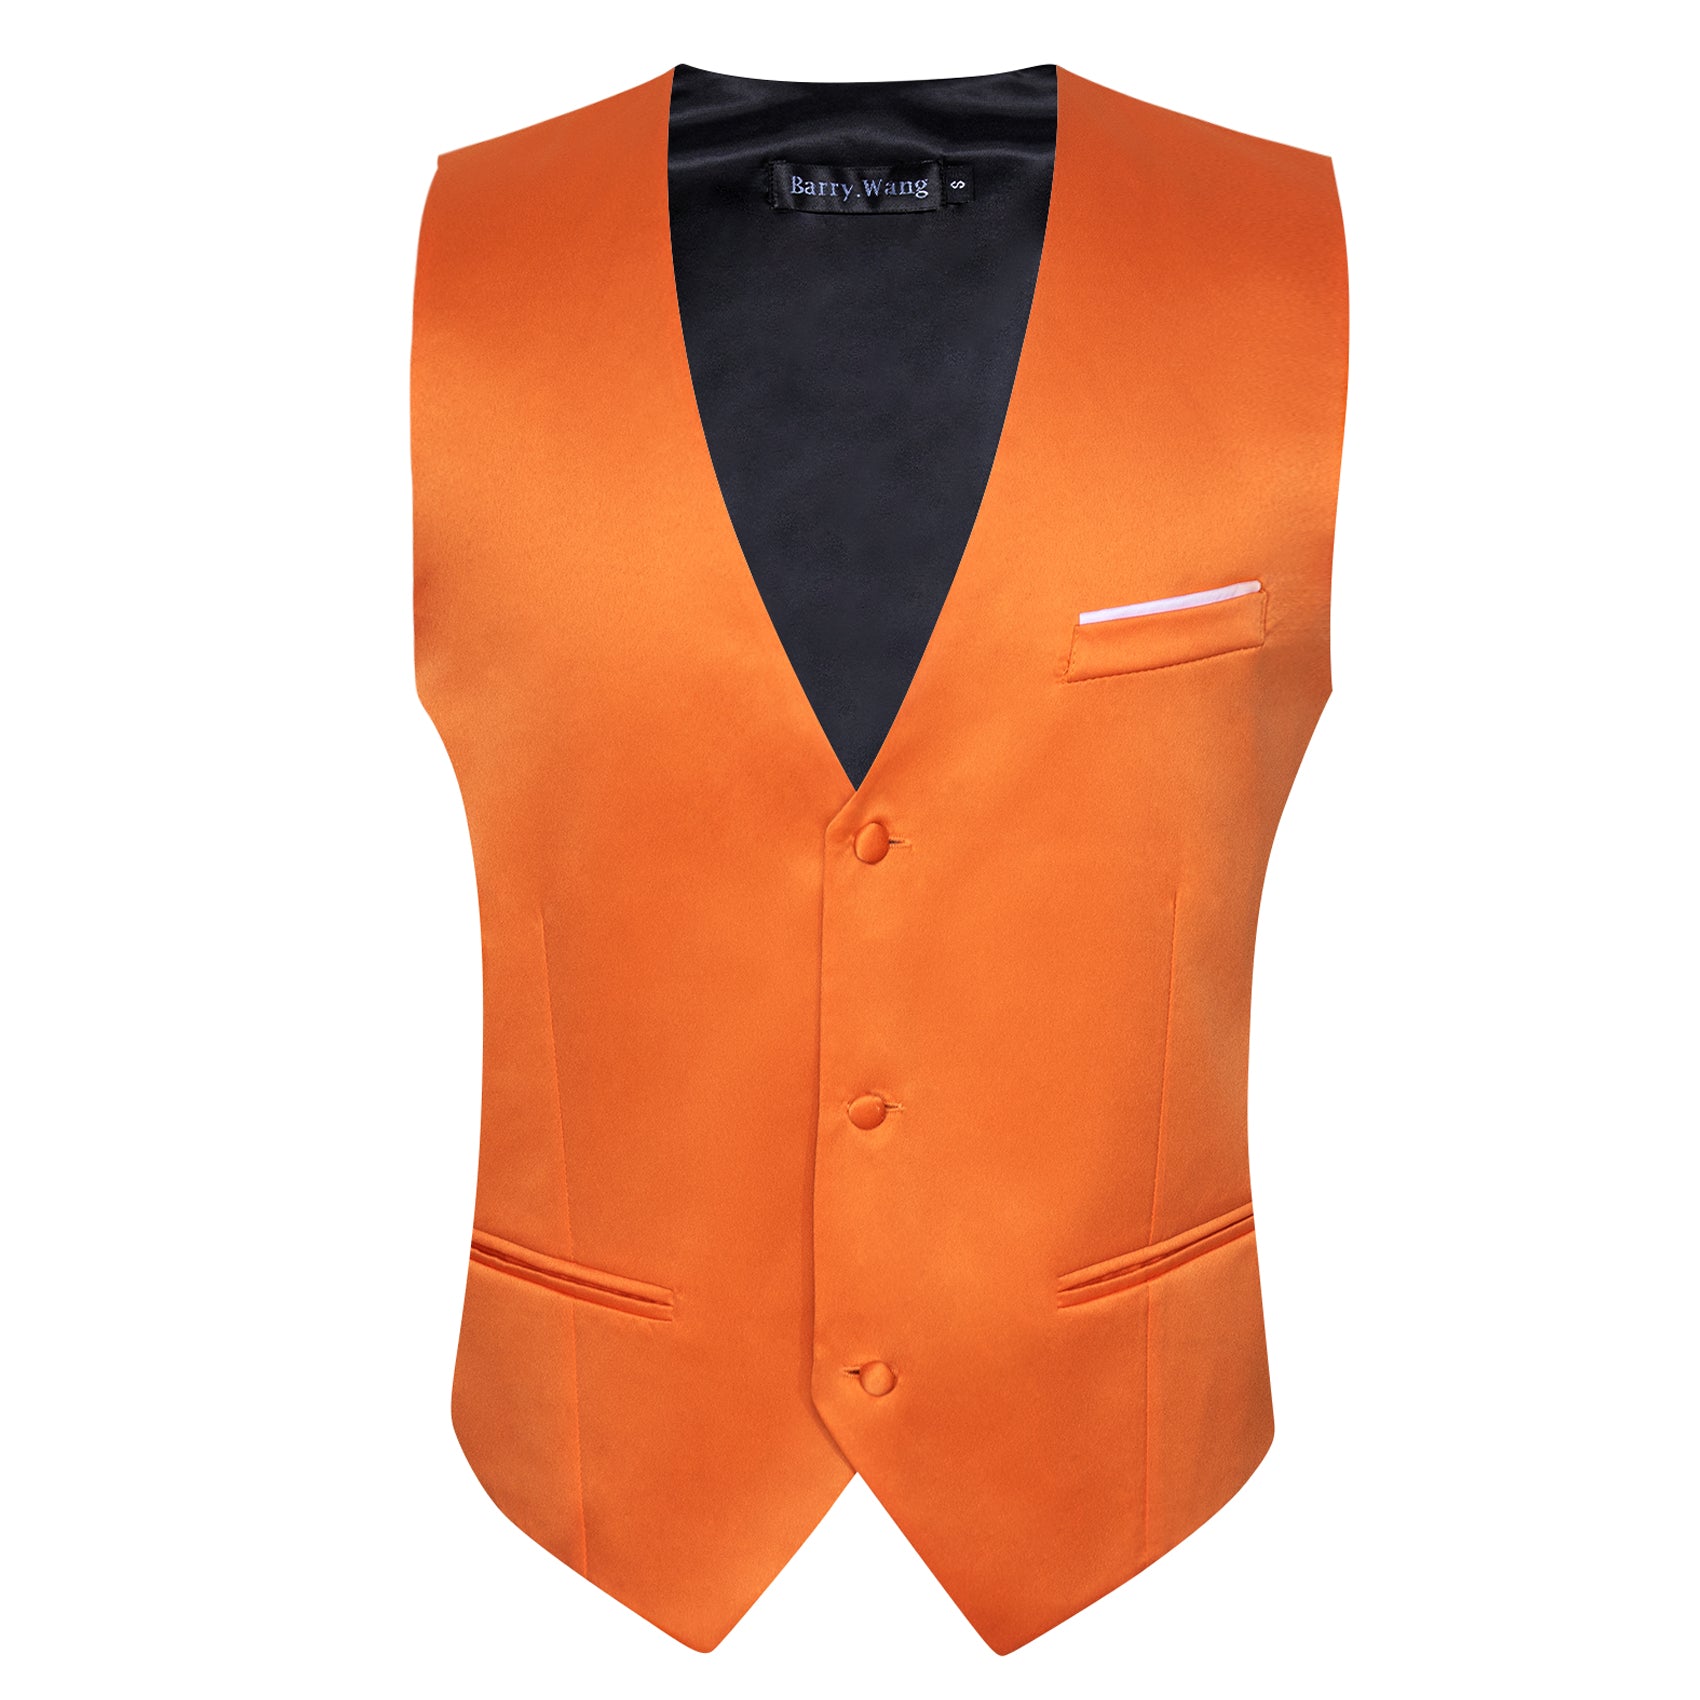 Men's Orange Solid Silk Waistcoat Vest for Business